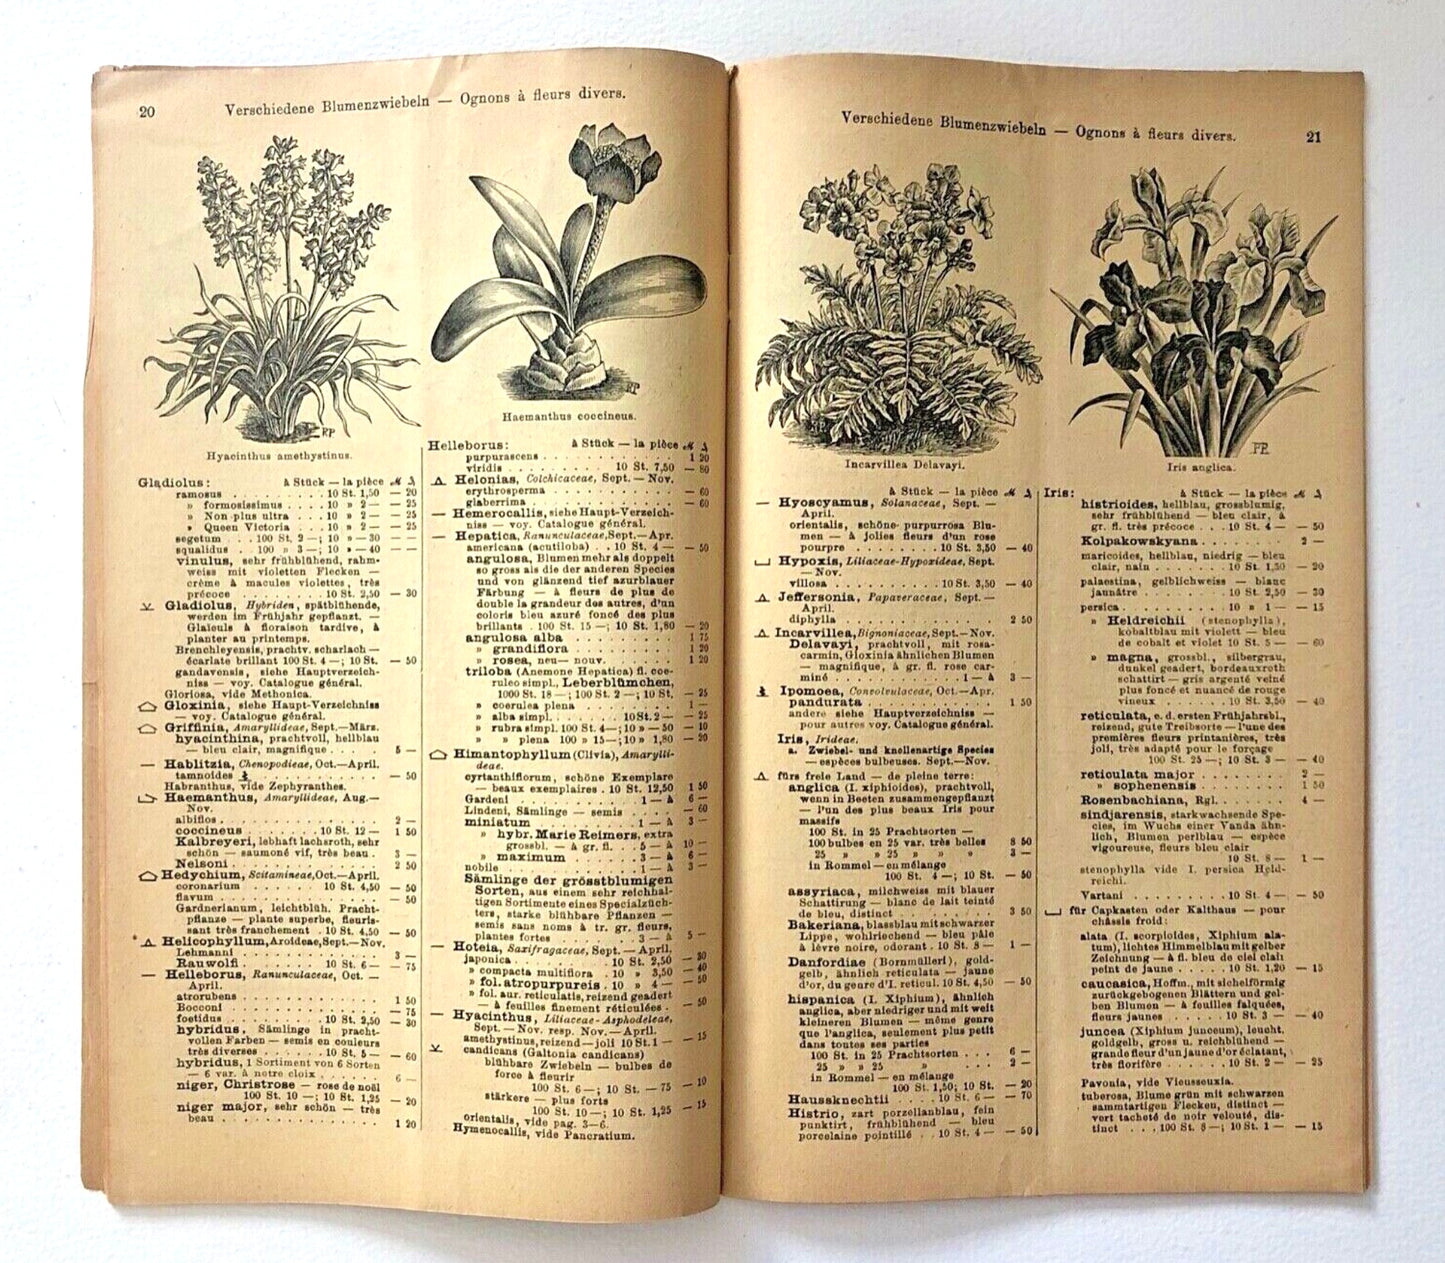 Haage & Schmidt Catalogue d'Ognons et de Tubercules à Fleurs 1901